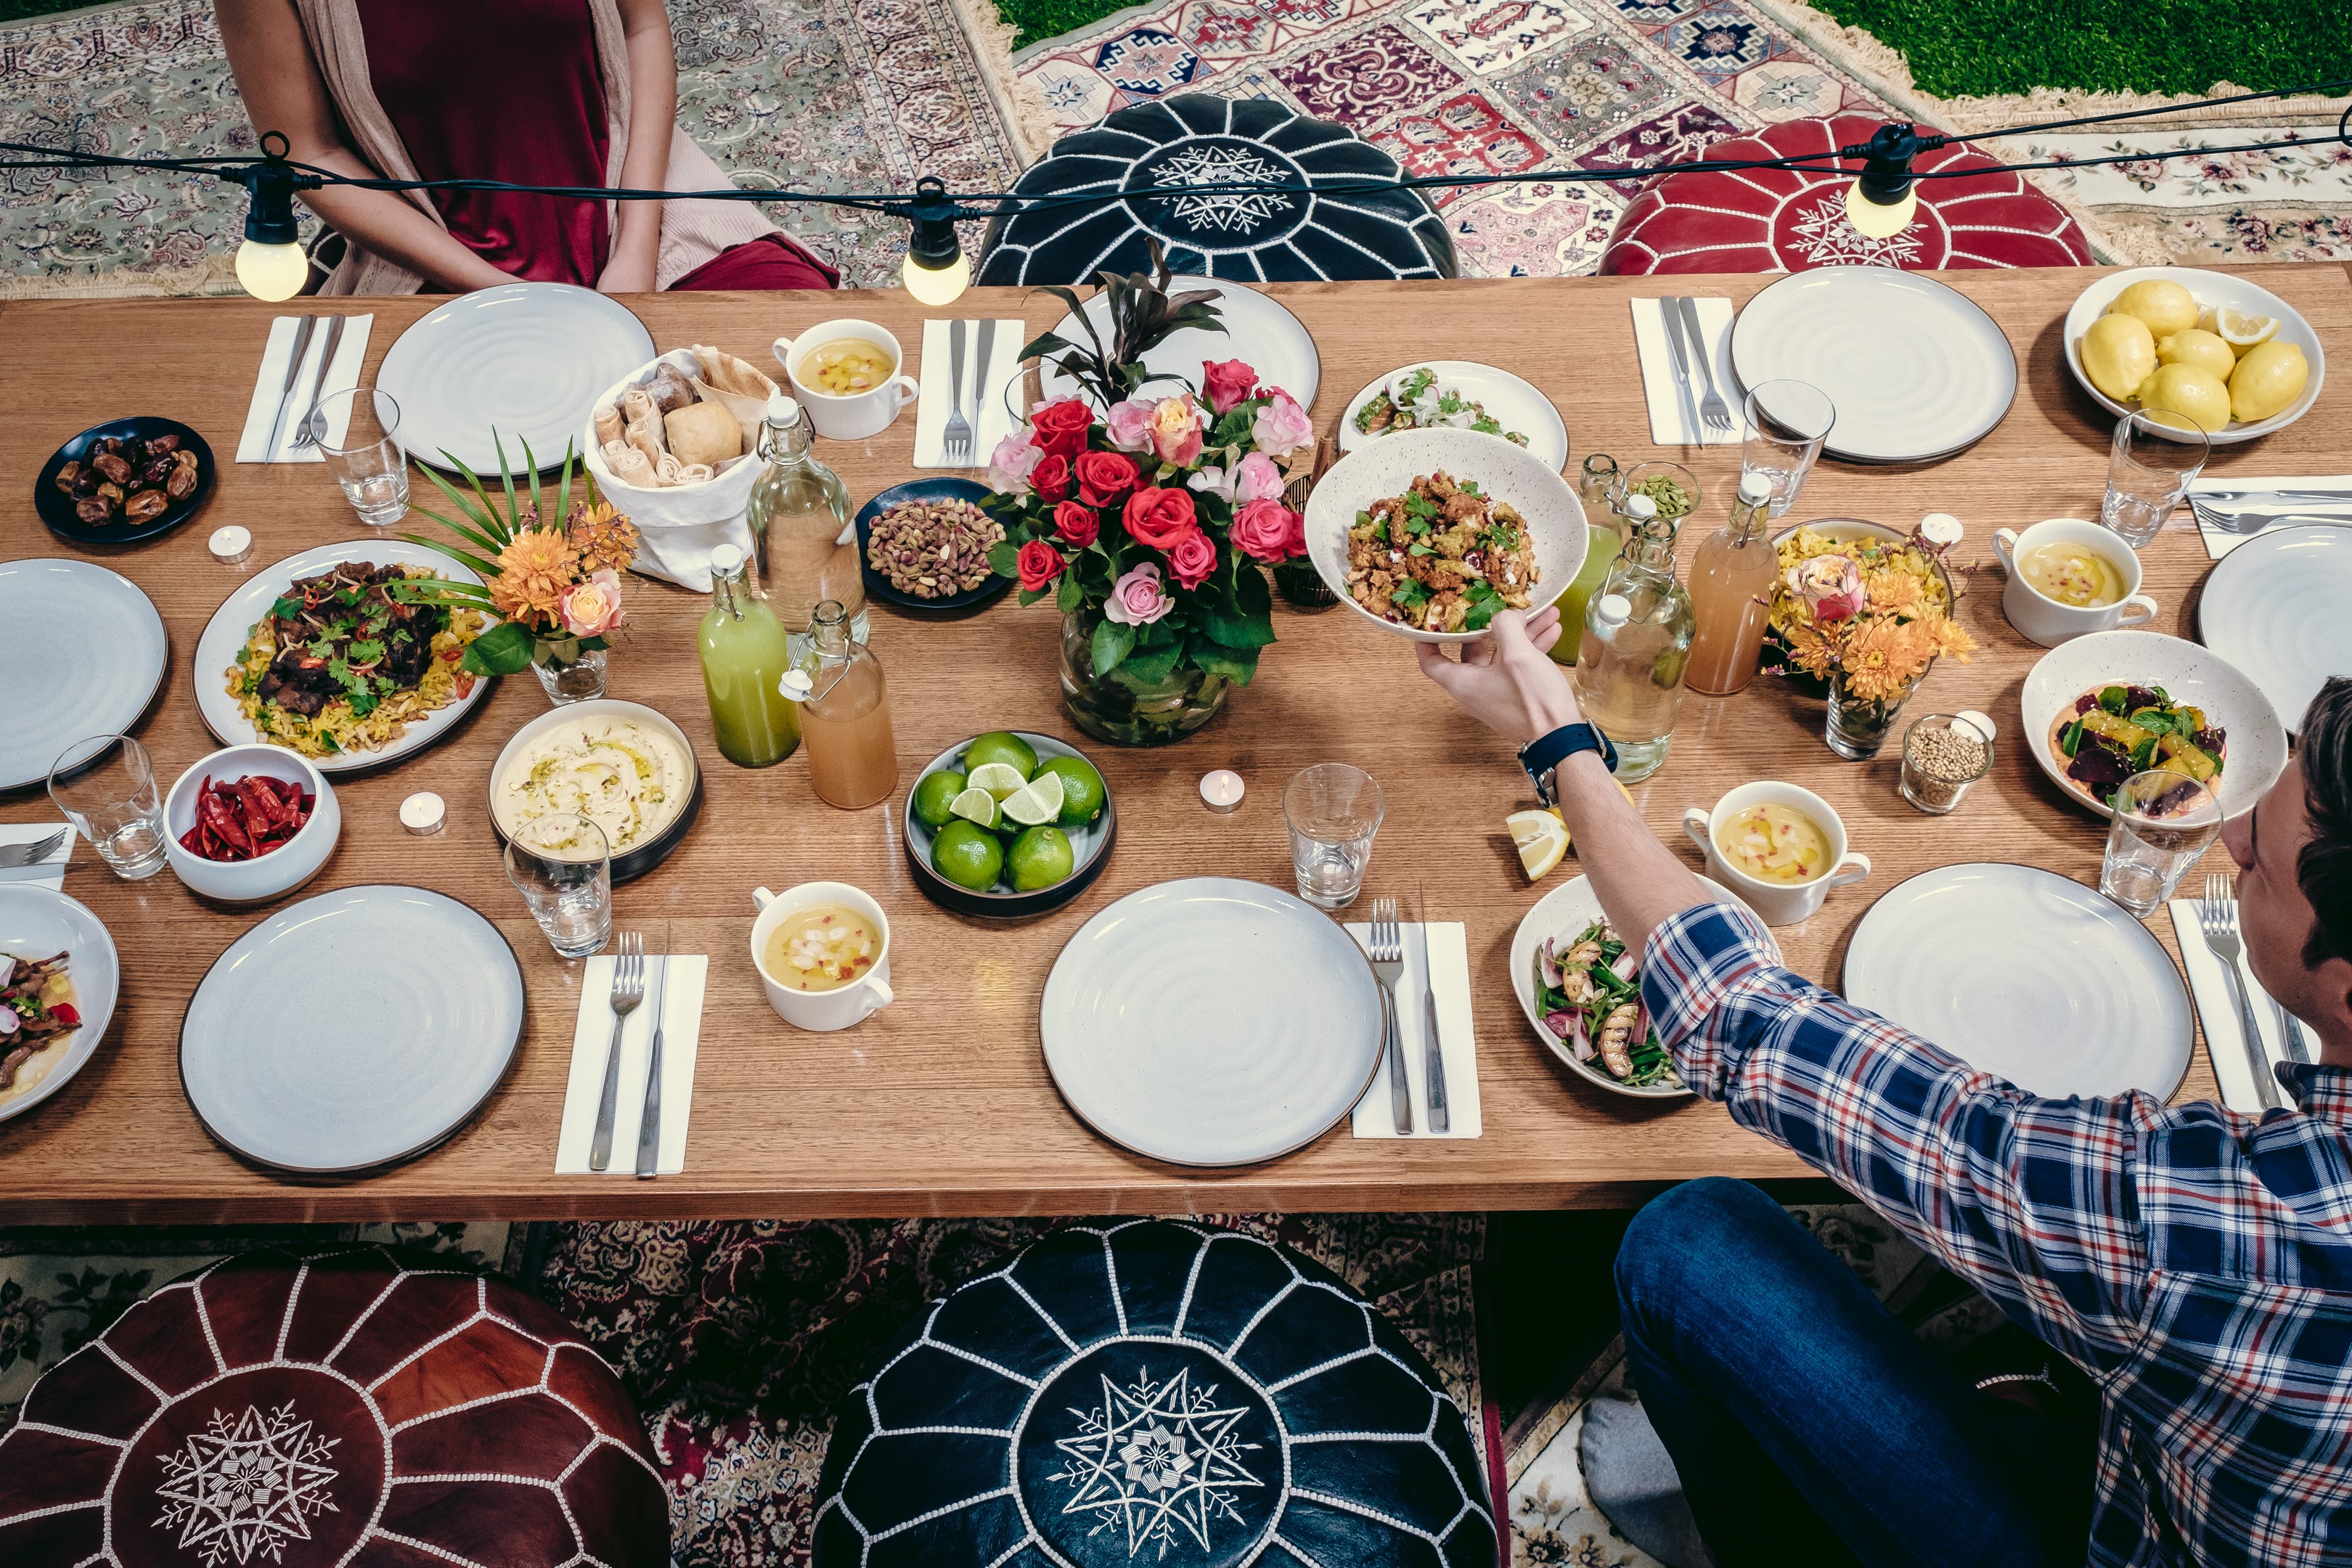 مطعم ديش يعلن عن عروضه الرائعة لشهر رمضان 2019